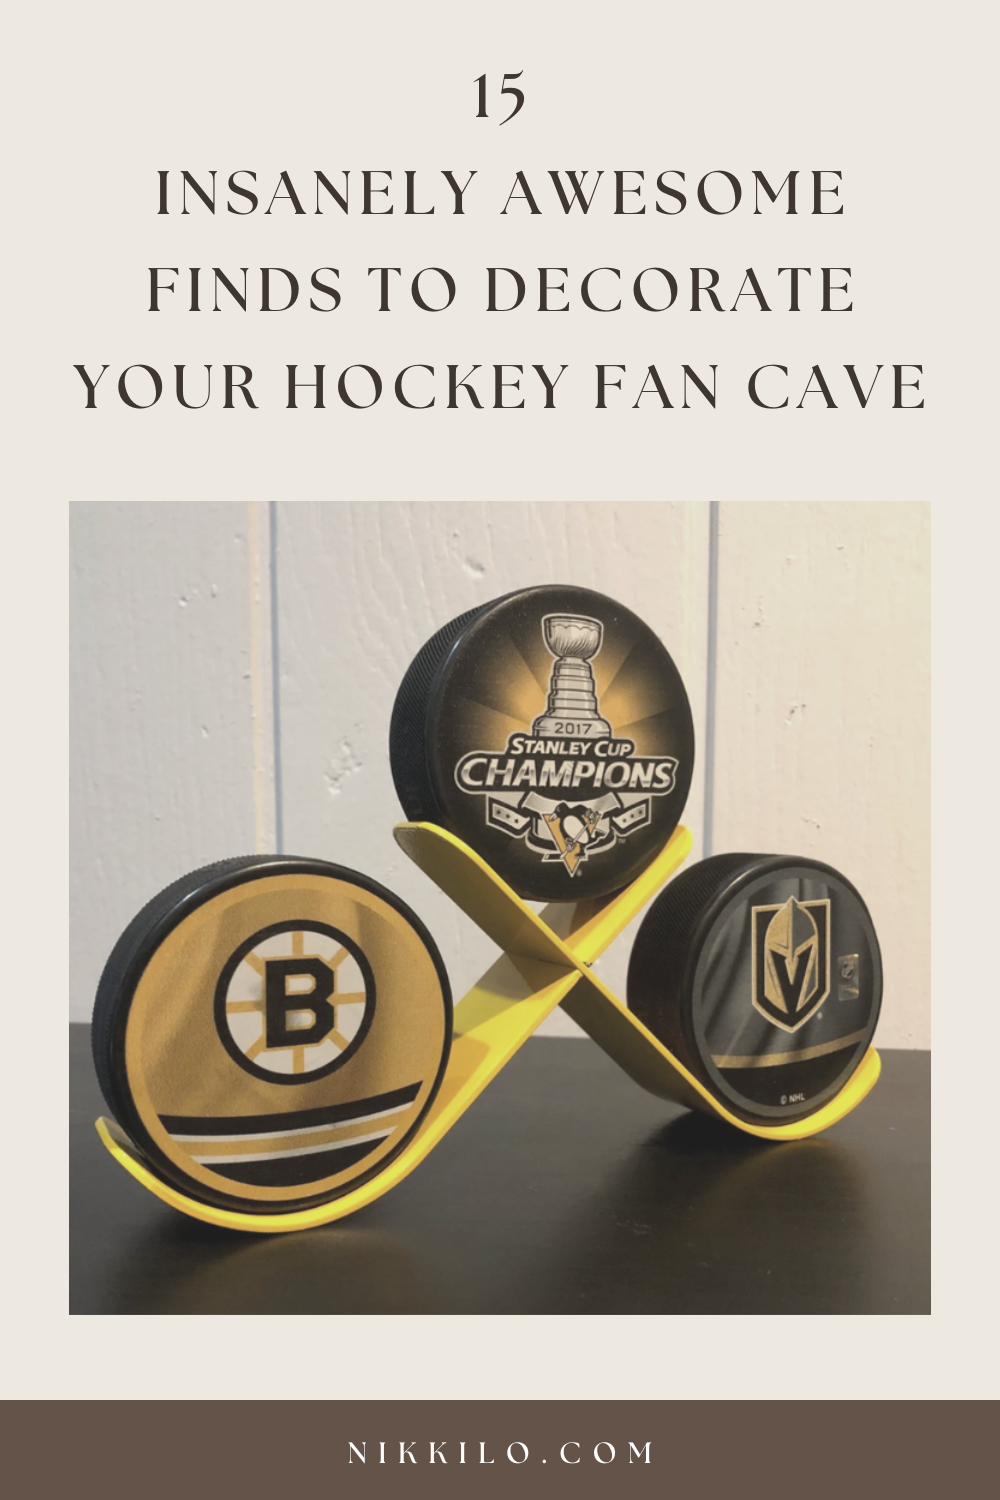 Ultimate Hockey Fan Cave